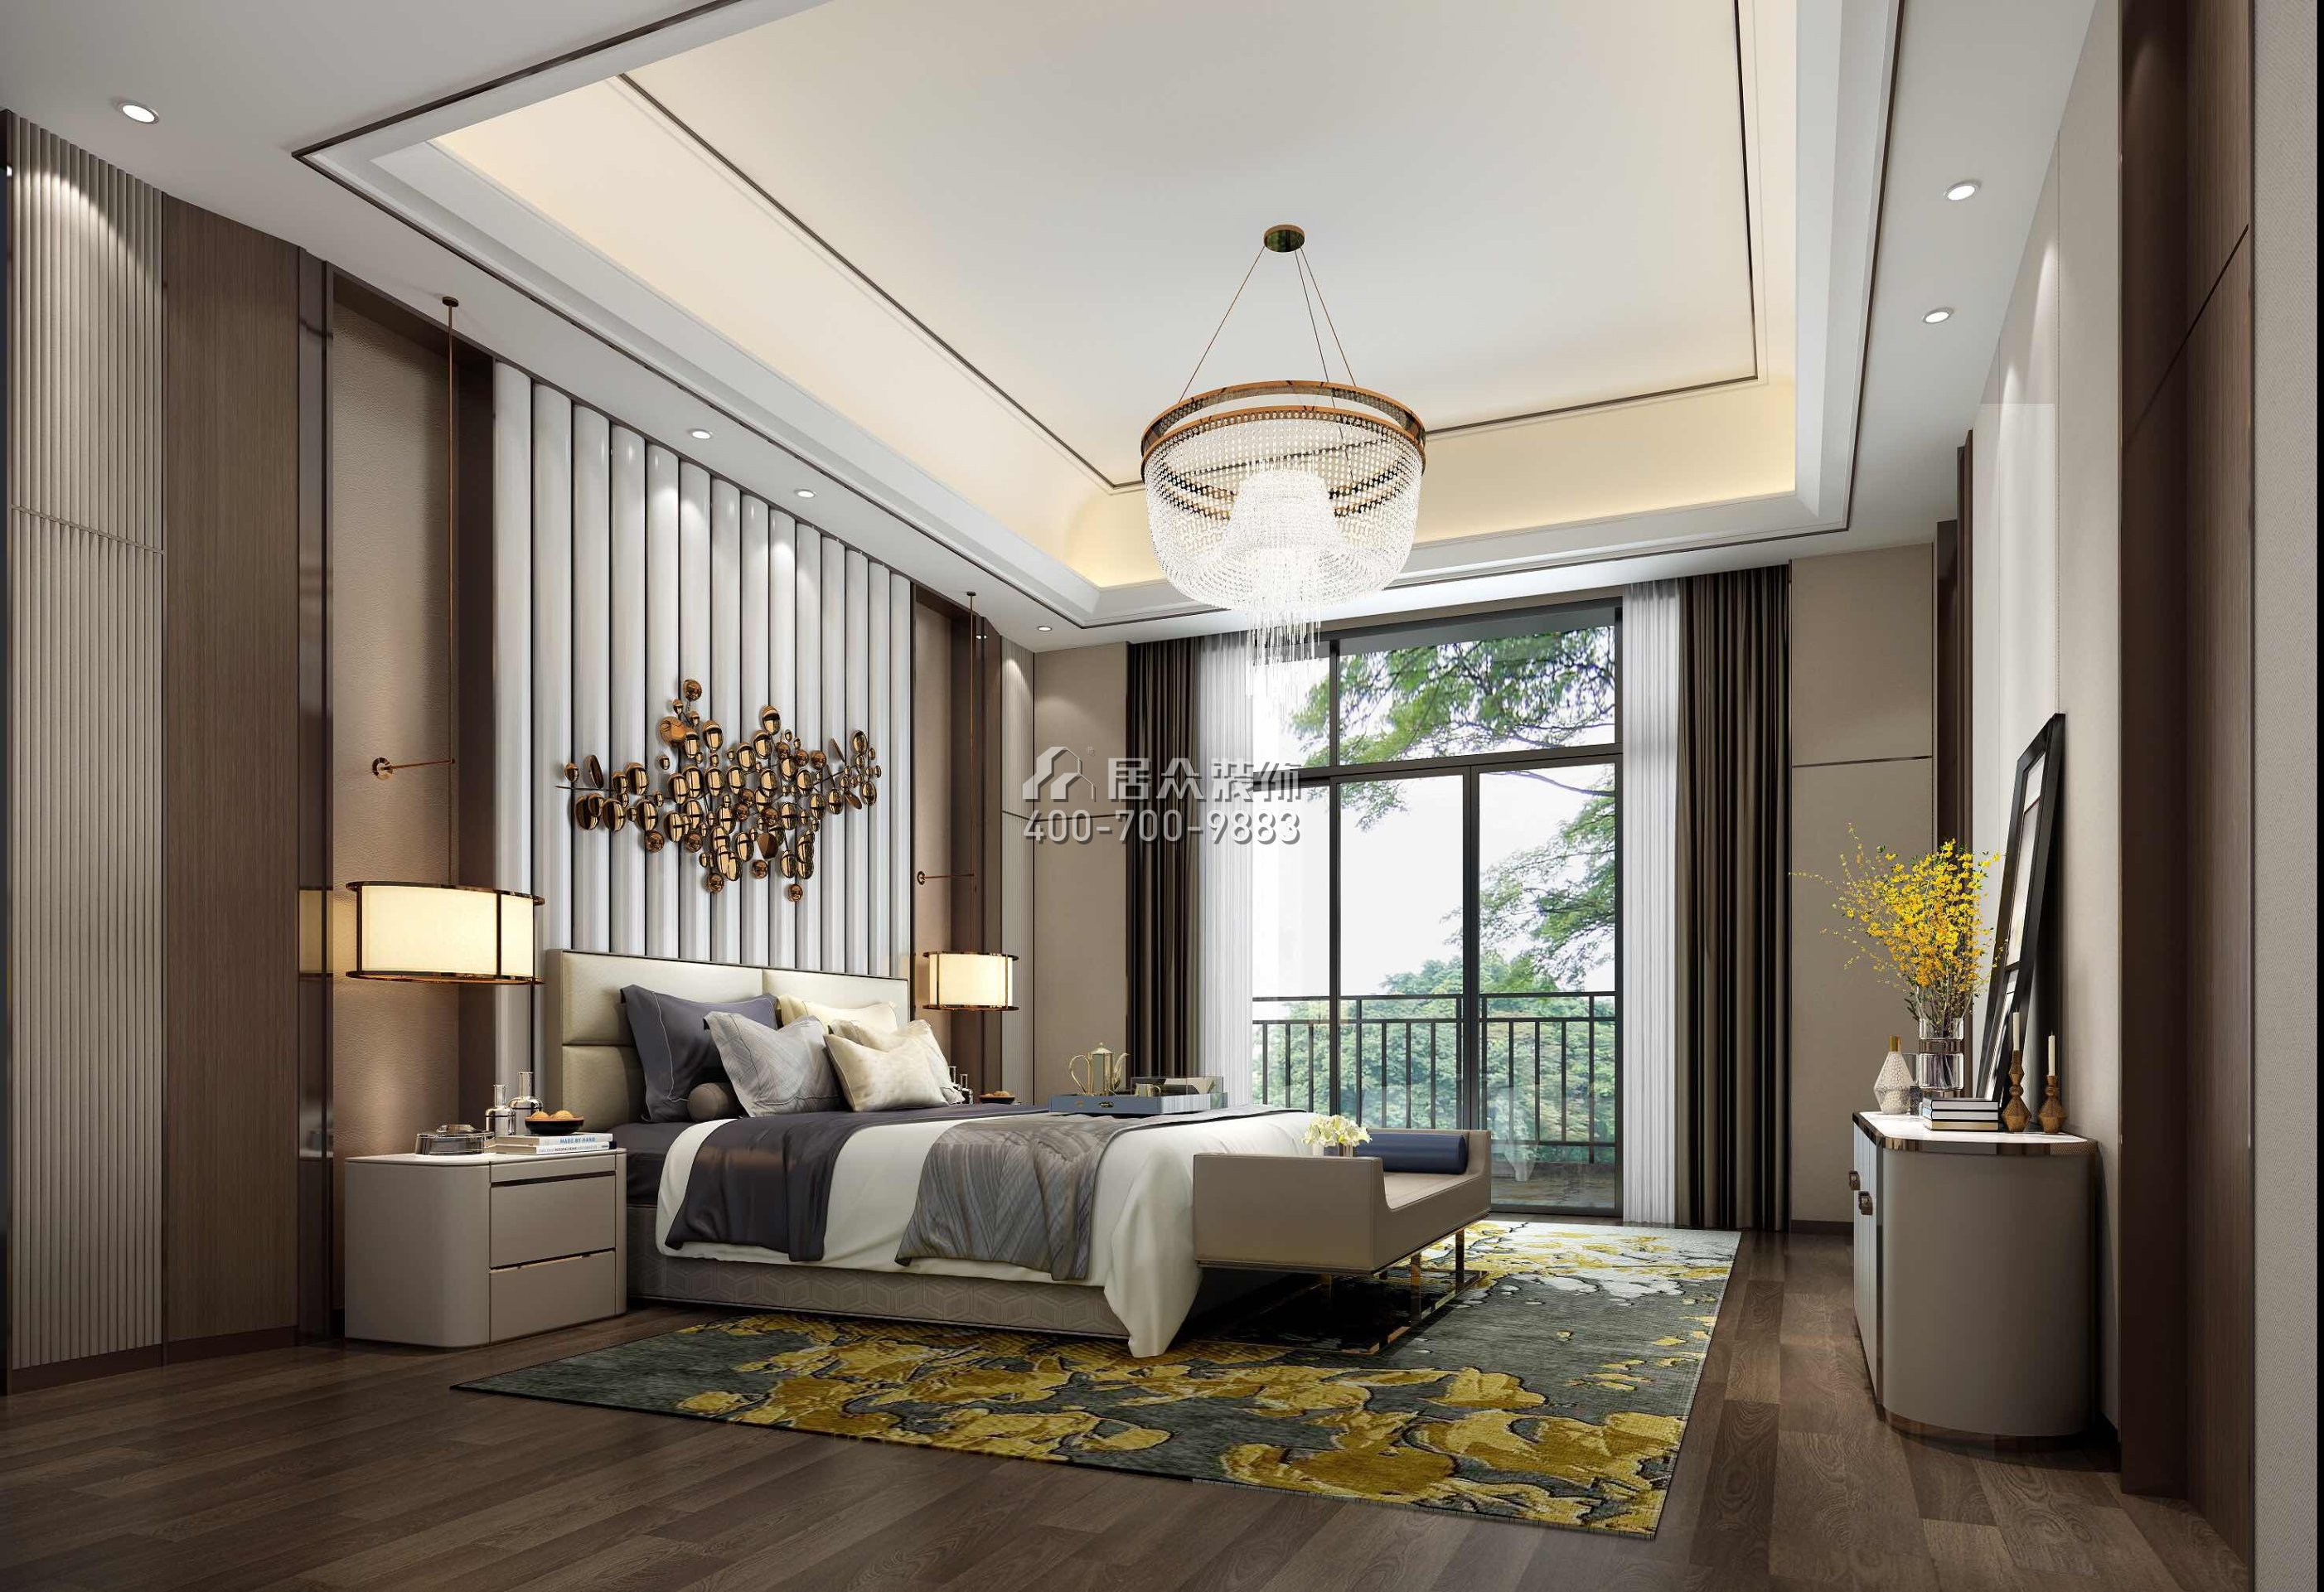 新世纪颐龙湾1000平方米中式风格别墅户型卧室装修效果图